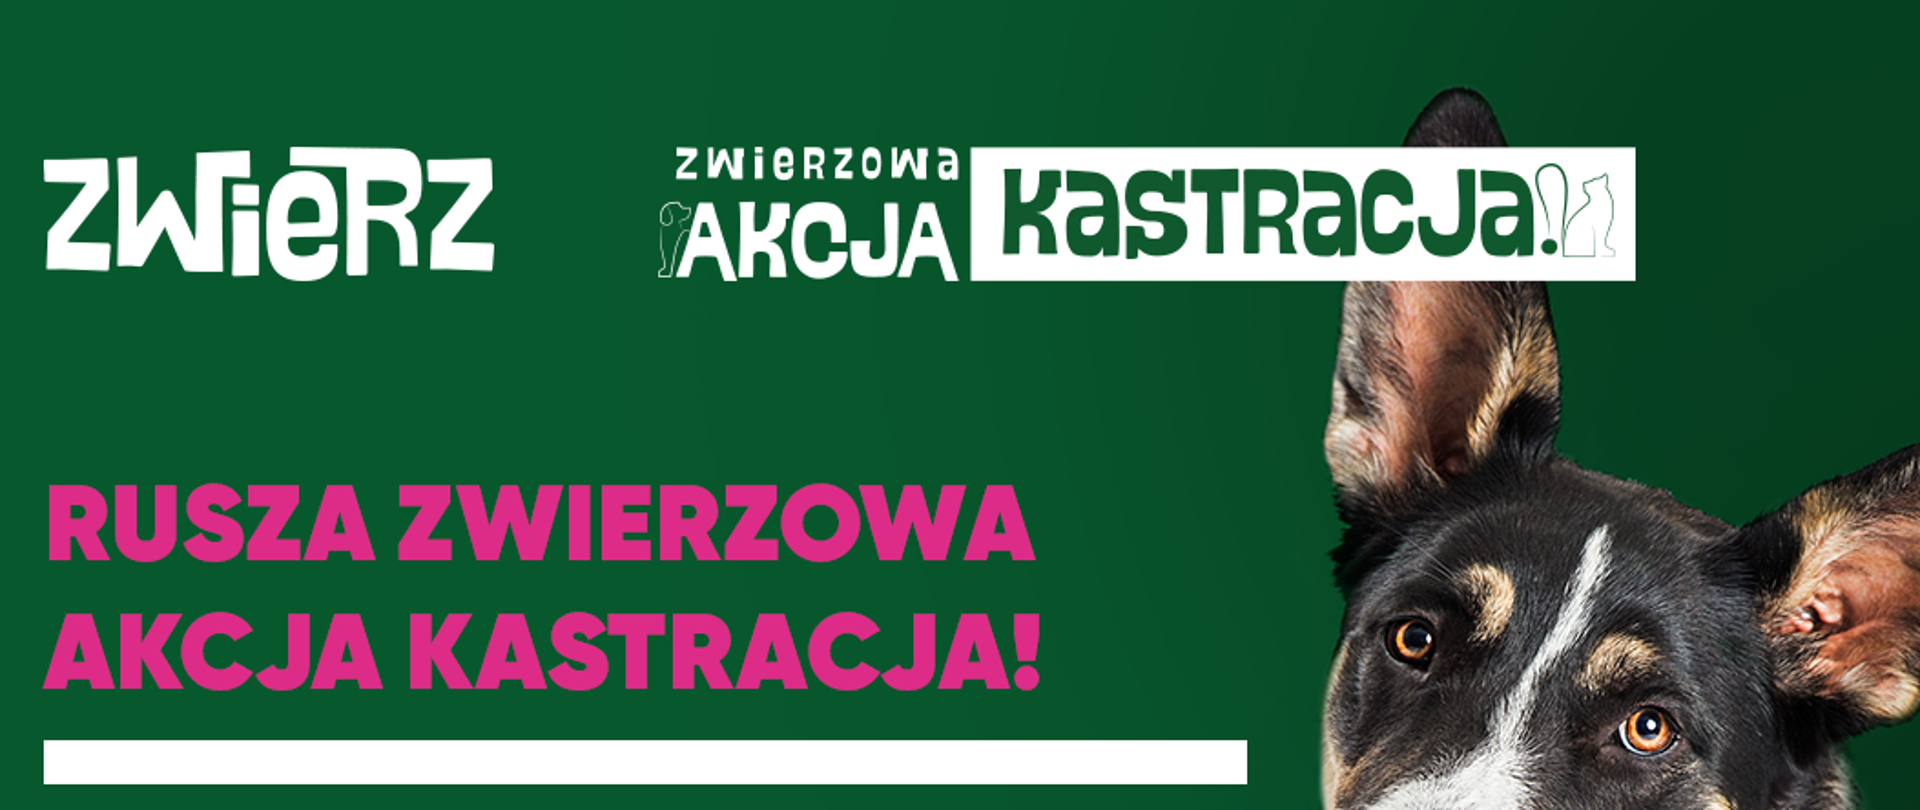 Plakat informujący o organizowanej akcji kastracji dla psów i kotów